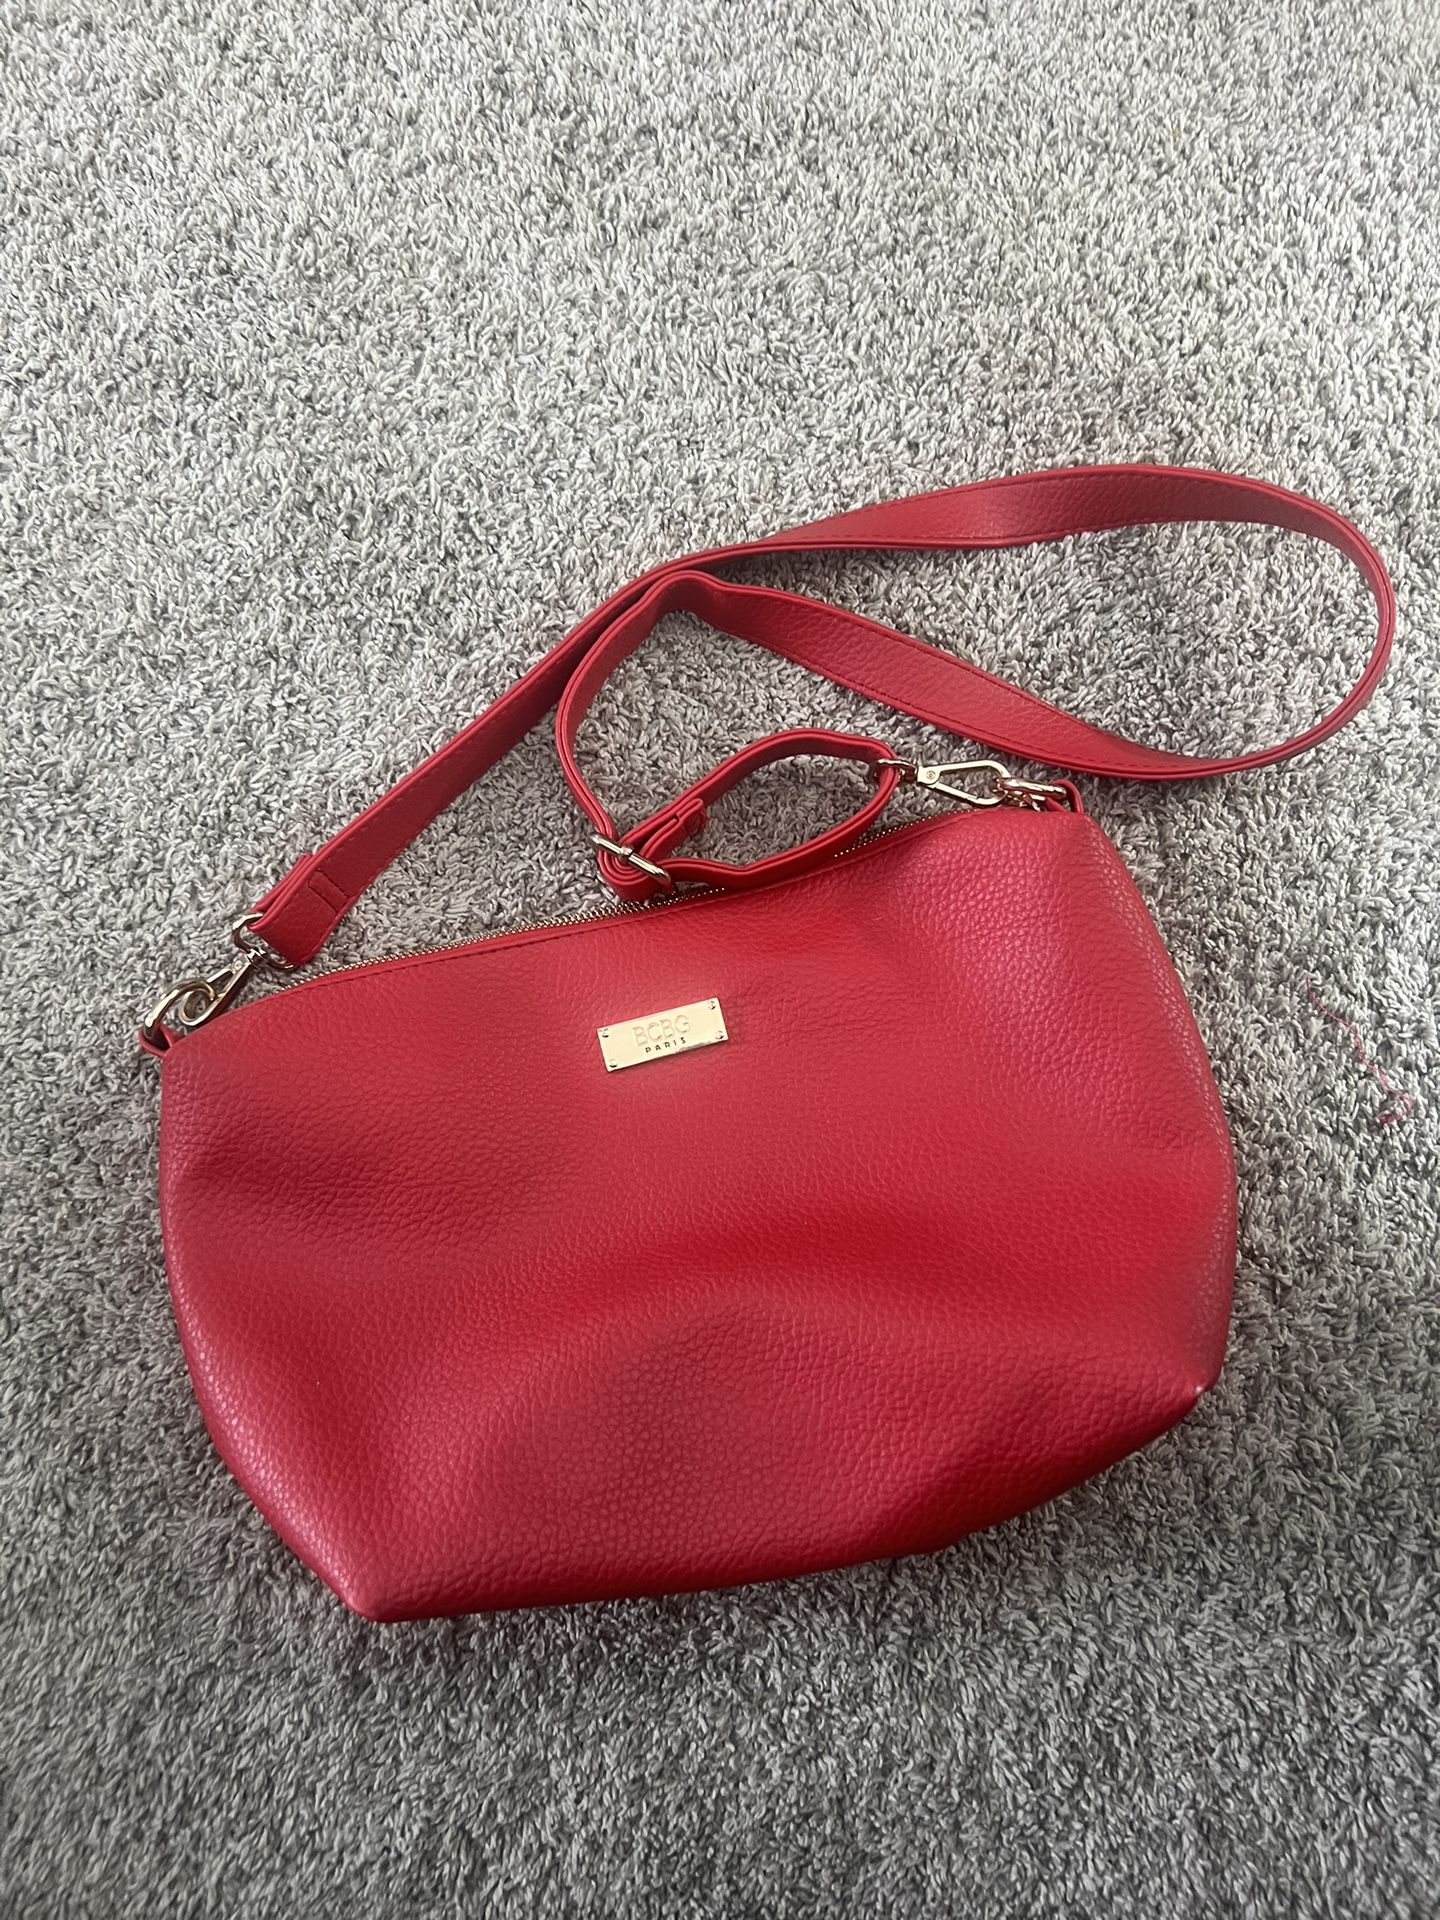 BCBG RED PURSE shoulder satchel bag